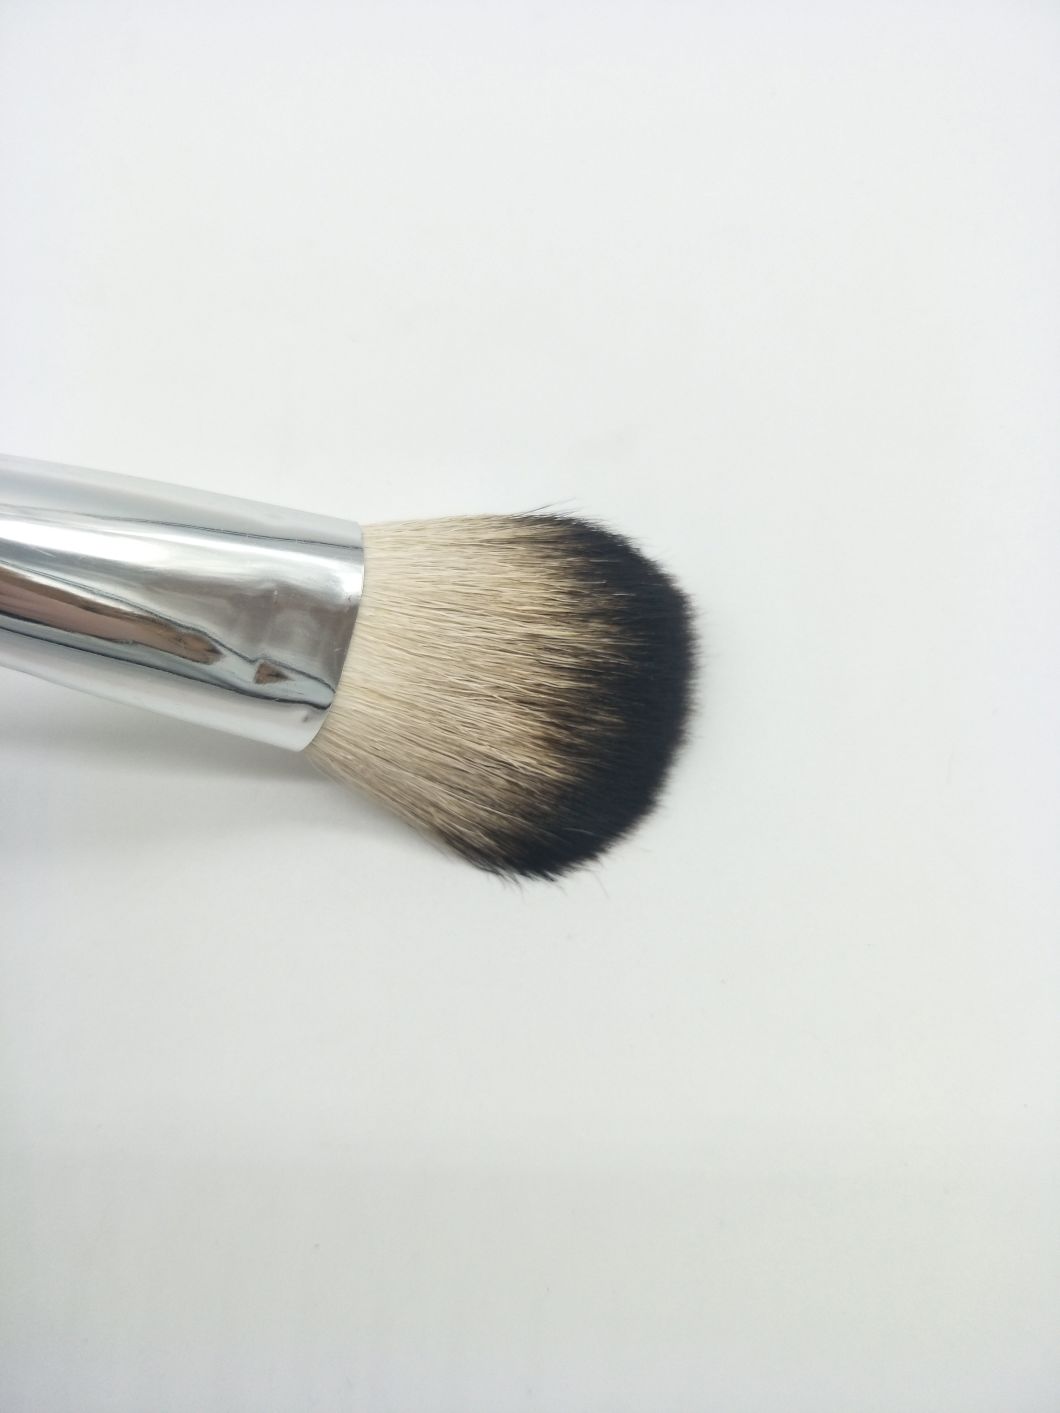 Professional Makeup 8PCS Bamboo Face Cosmetic Makeup Brushes Set